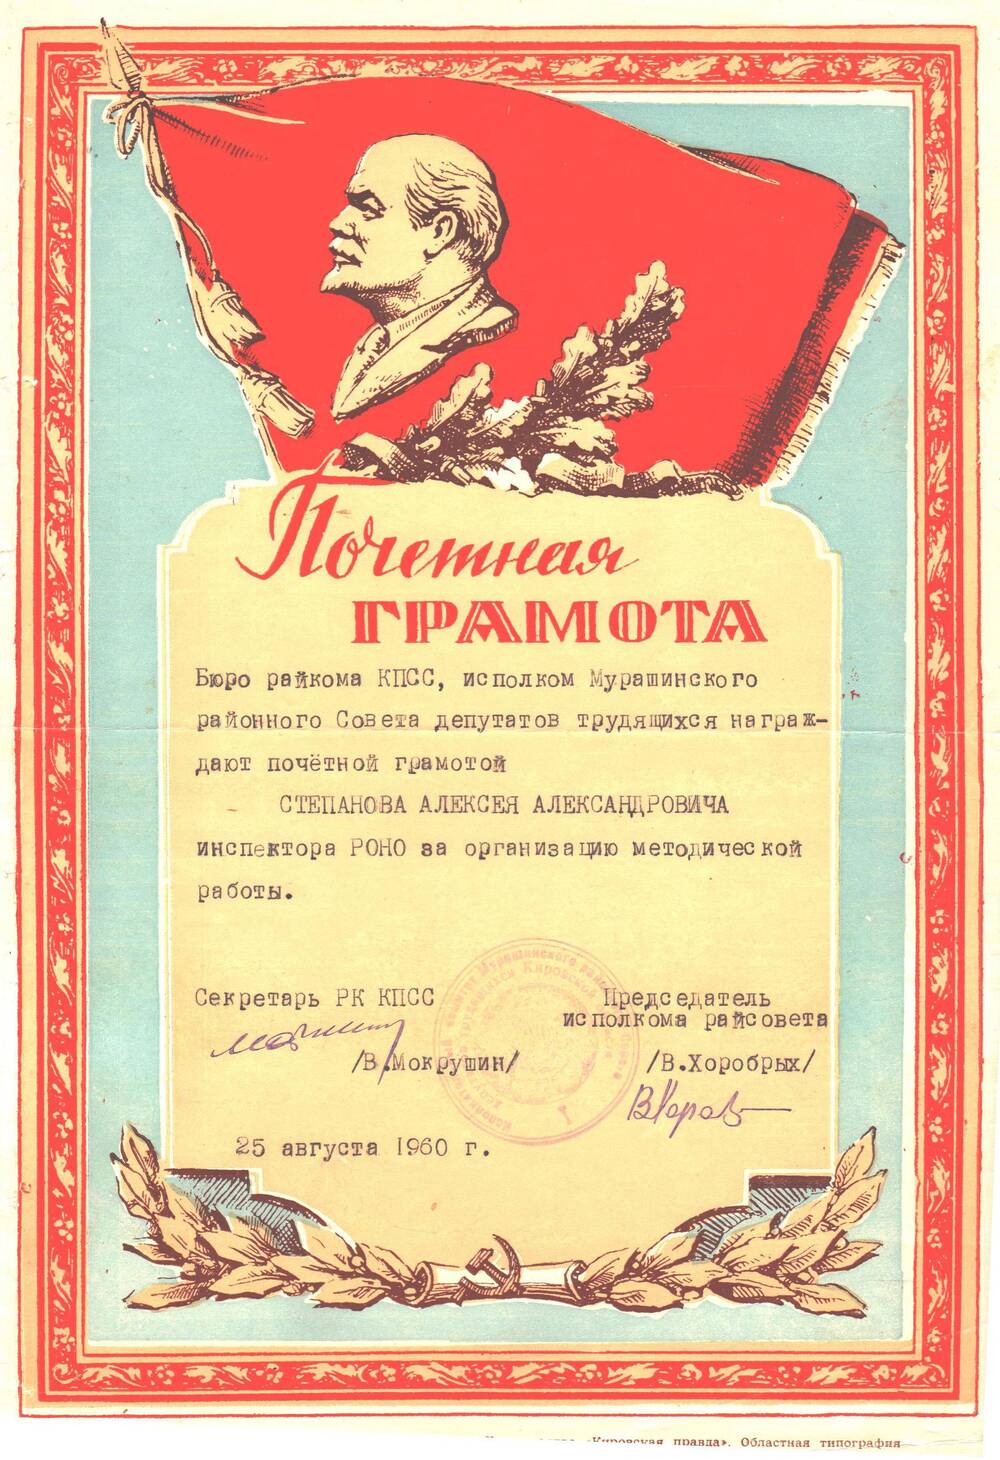 Почетная грамота Степанова Алексея Александровича инспектора РОНО за организацию методической работы.